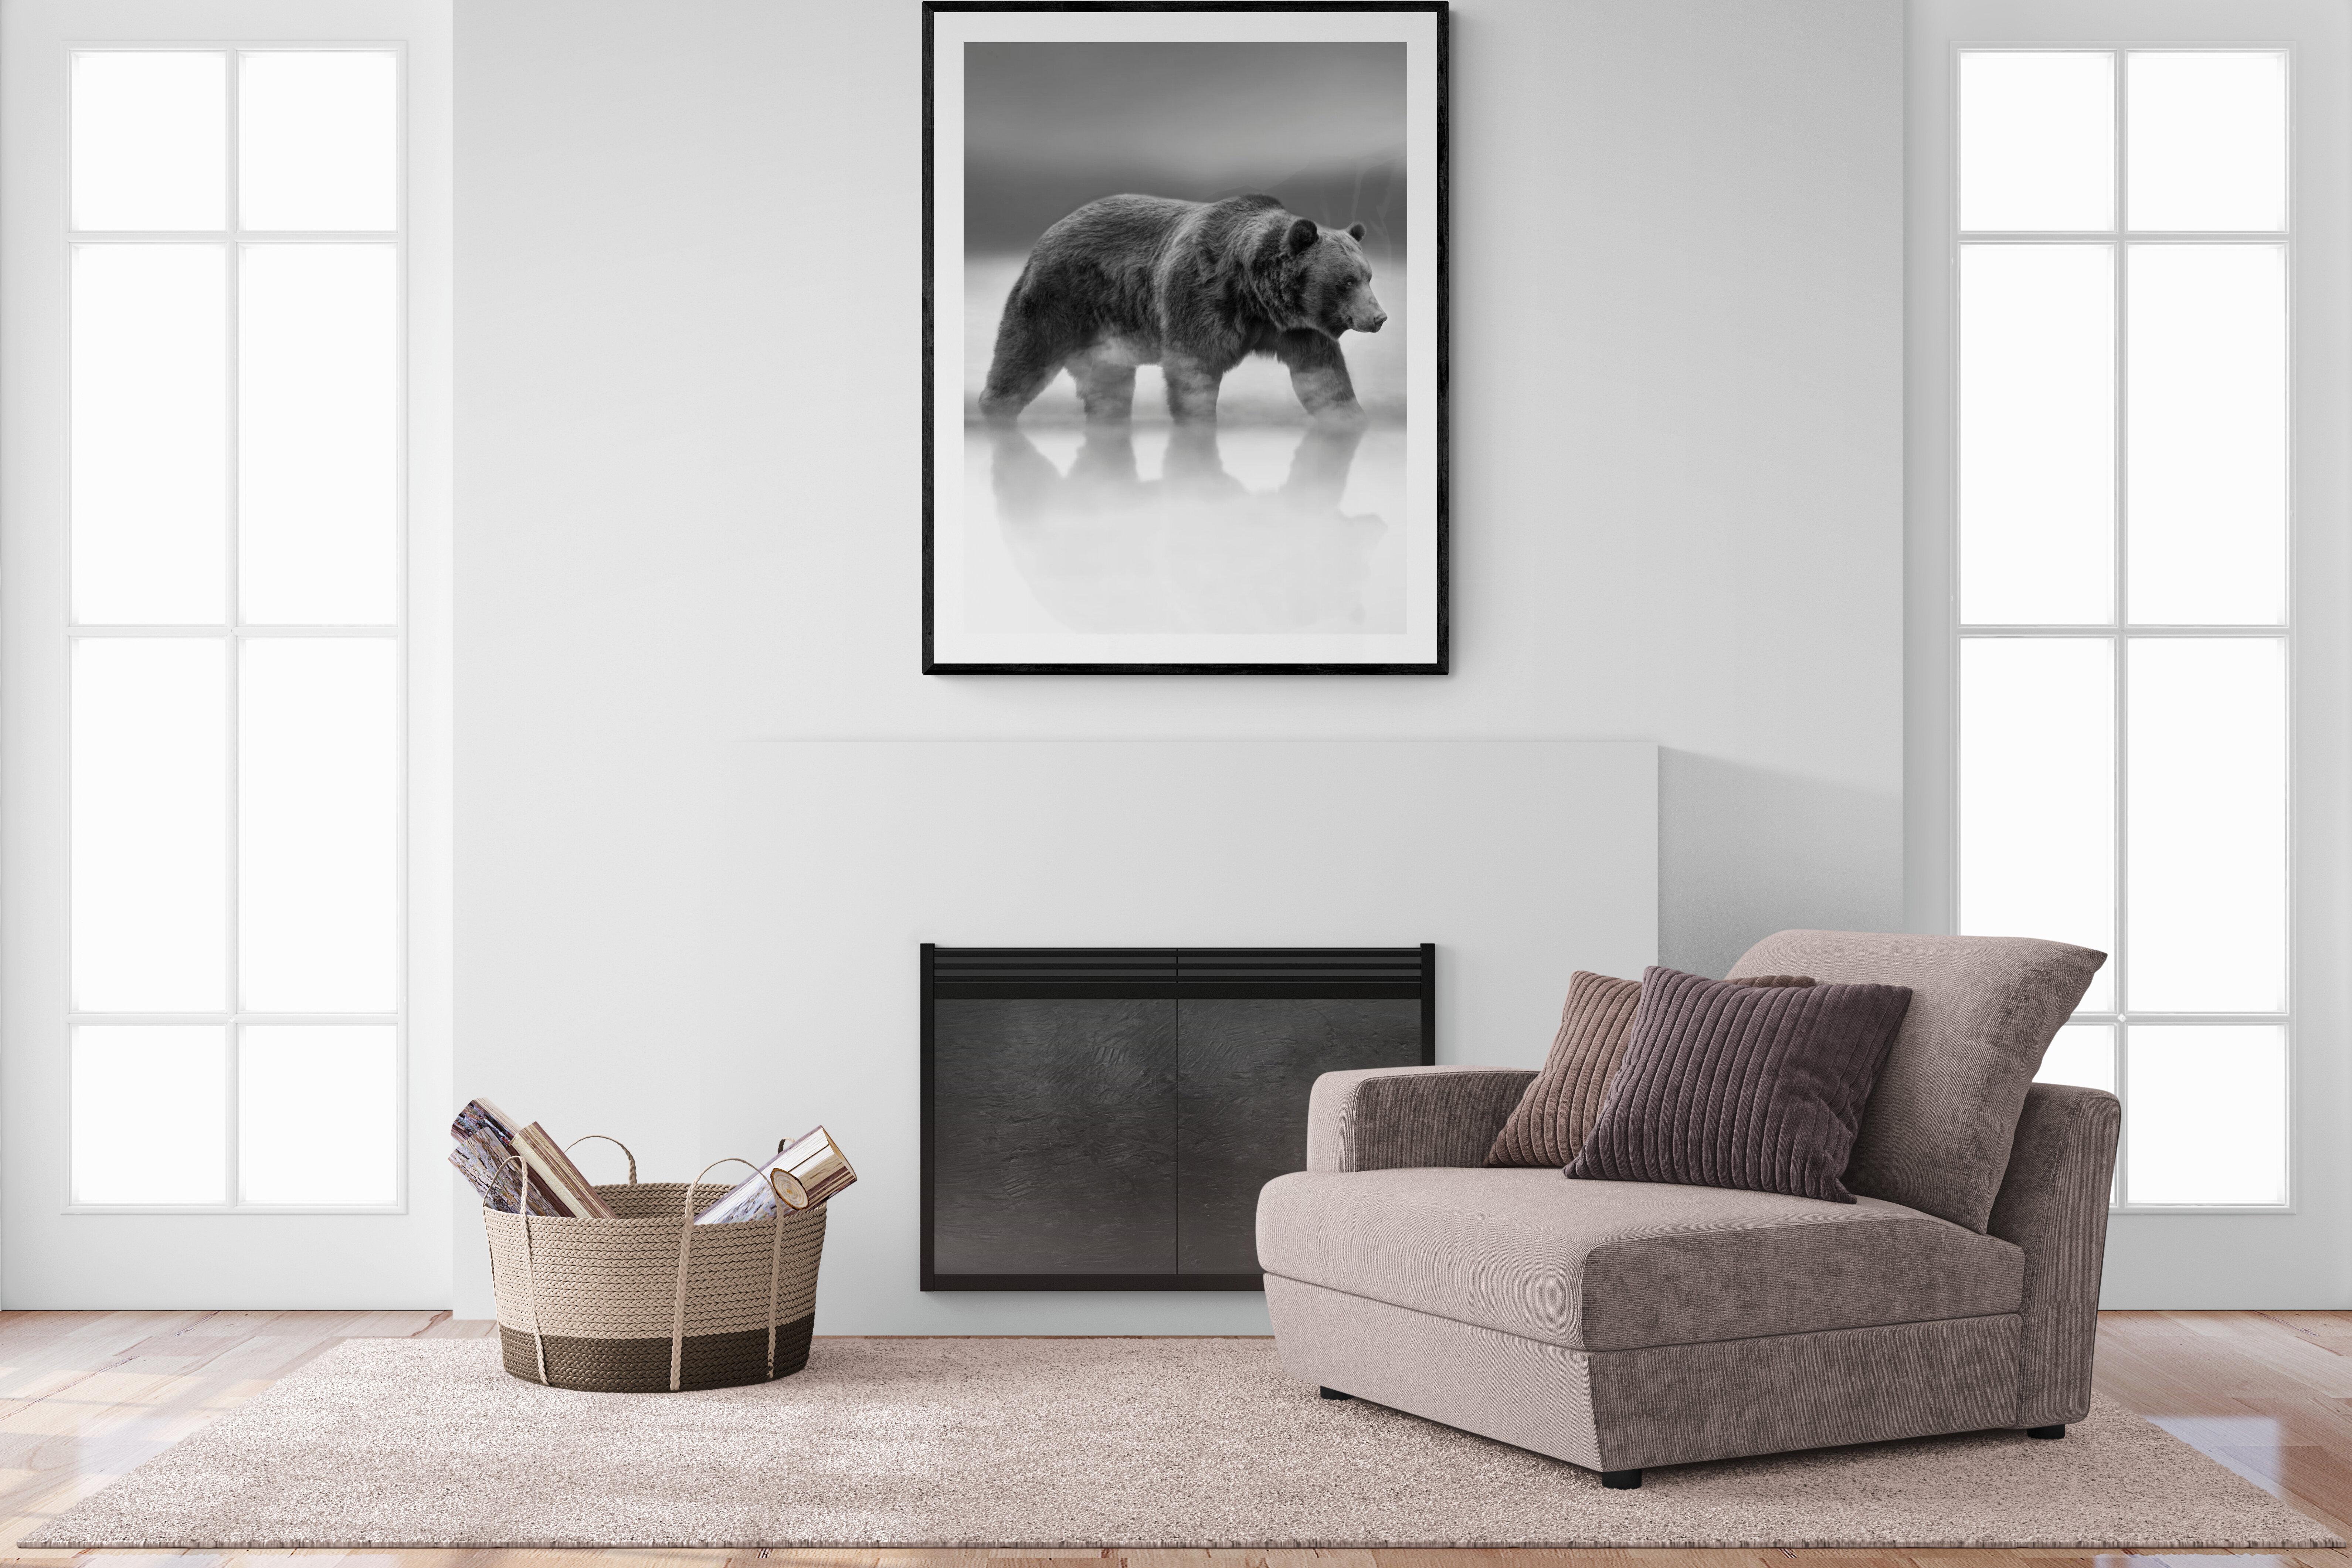 Il s'agit d'une photographie contemporaine d'un ours Kodiak.  
Ceci a été tourné sur l'île de Kodiak en 2019. 
Imprimé non signé
Papier pigmentaire d'archivage 
Encres d'archivage
Encadrement disponible. Renseignez-vous sur les tarifs. 


Shane